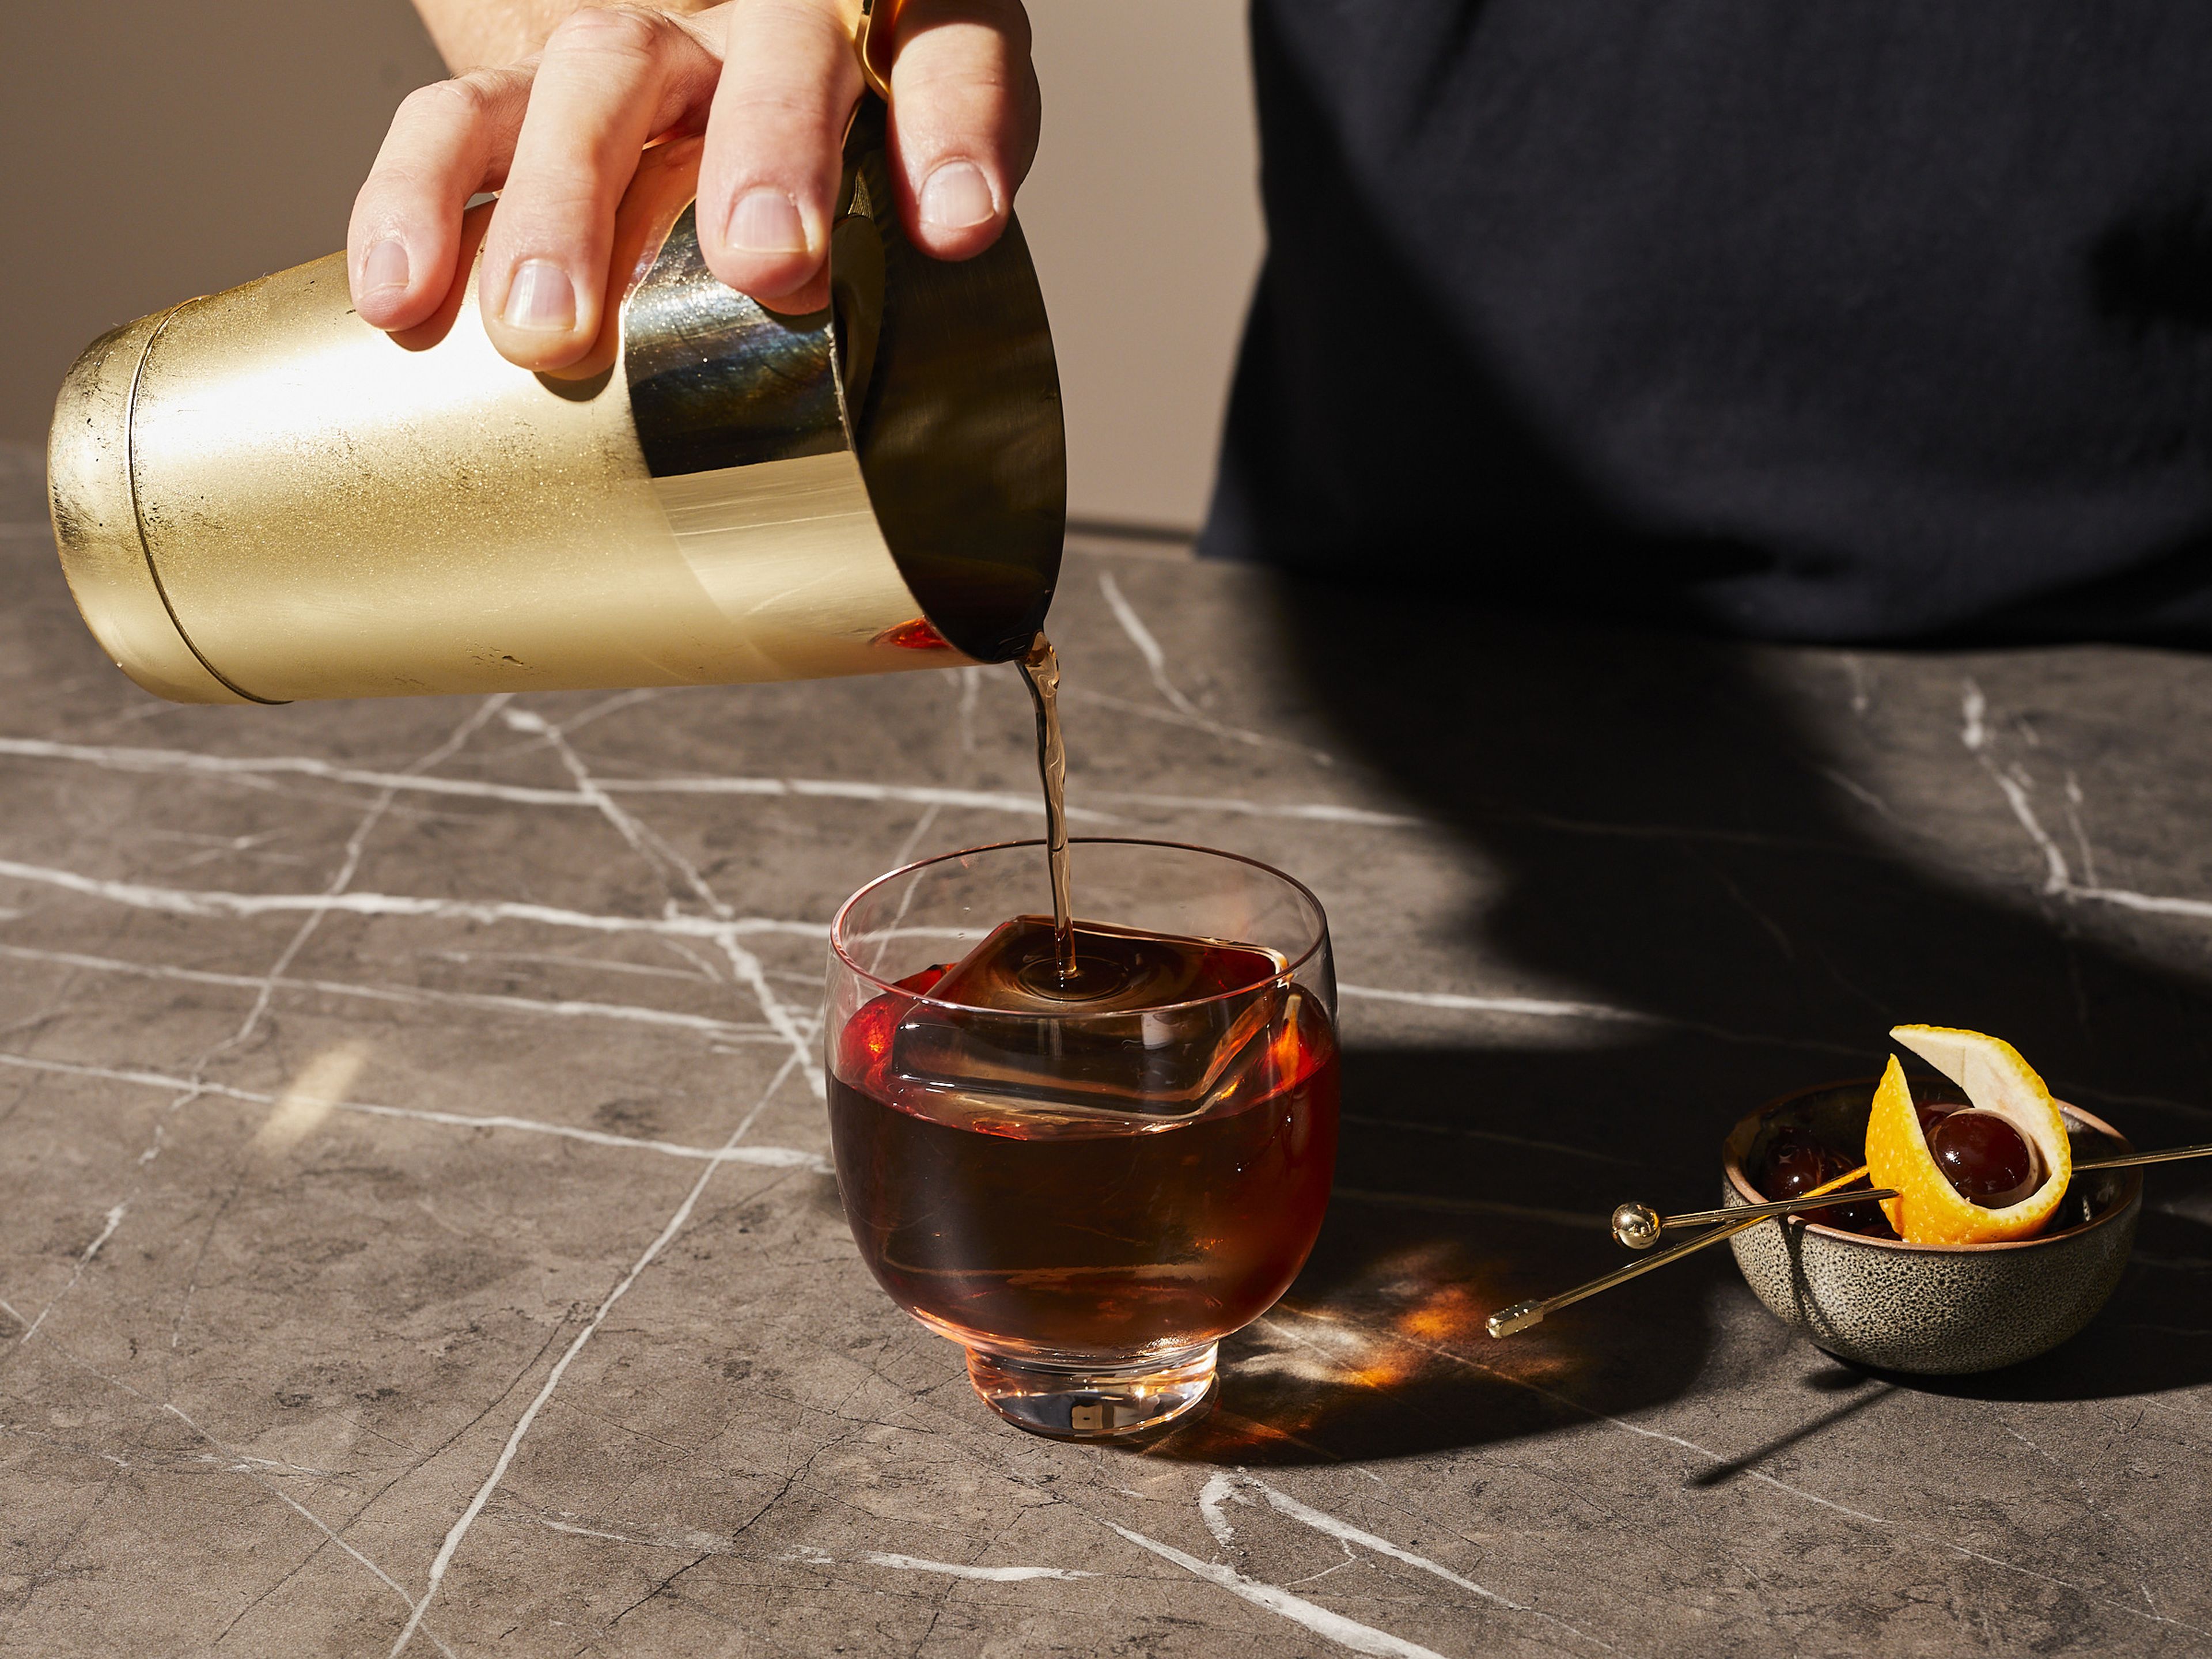 Einen großen Eiswürfel in das Glas geben. Das Cocktailsieb auf den Shaker legen, und den Drink in das Glas gießen. Mit einem Stückchen Orangenschale und einer Cocktailkirsche garnieren.